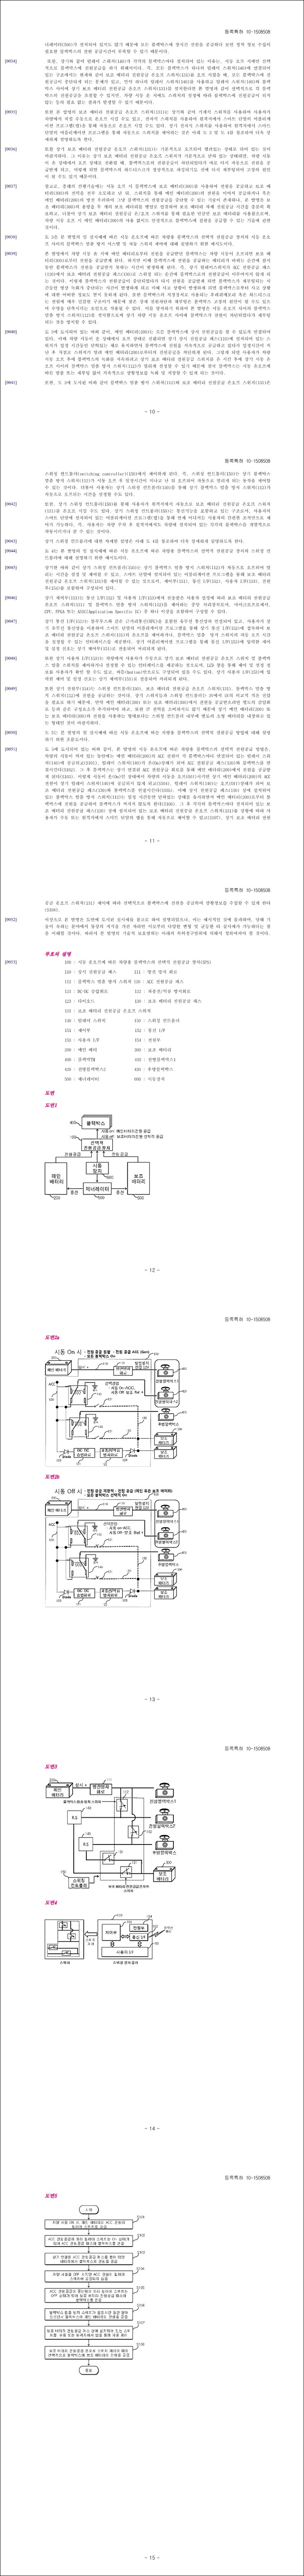 특허 제10-1508508호(시동 온오프에 따른 차량용 블랙박스의 선택적 전원공급 장치 및 그 방법, 주식회사 이스턴아이에이, 